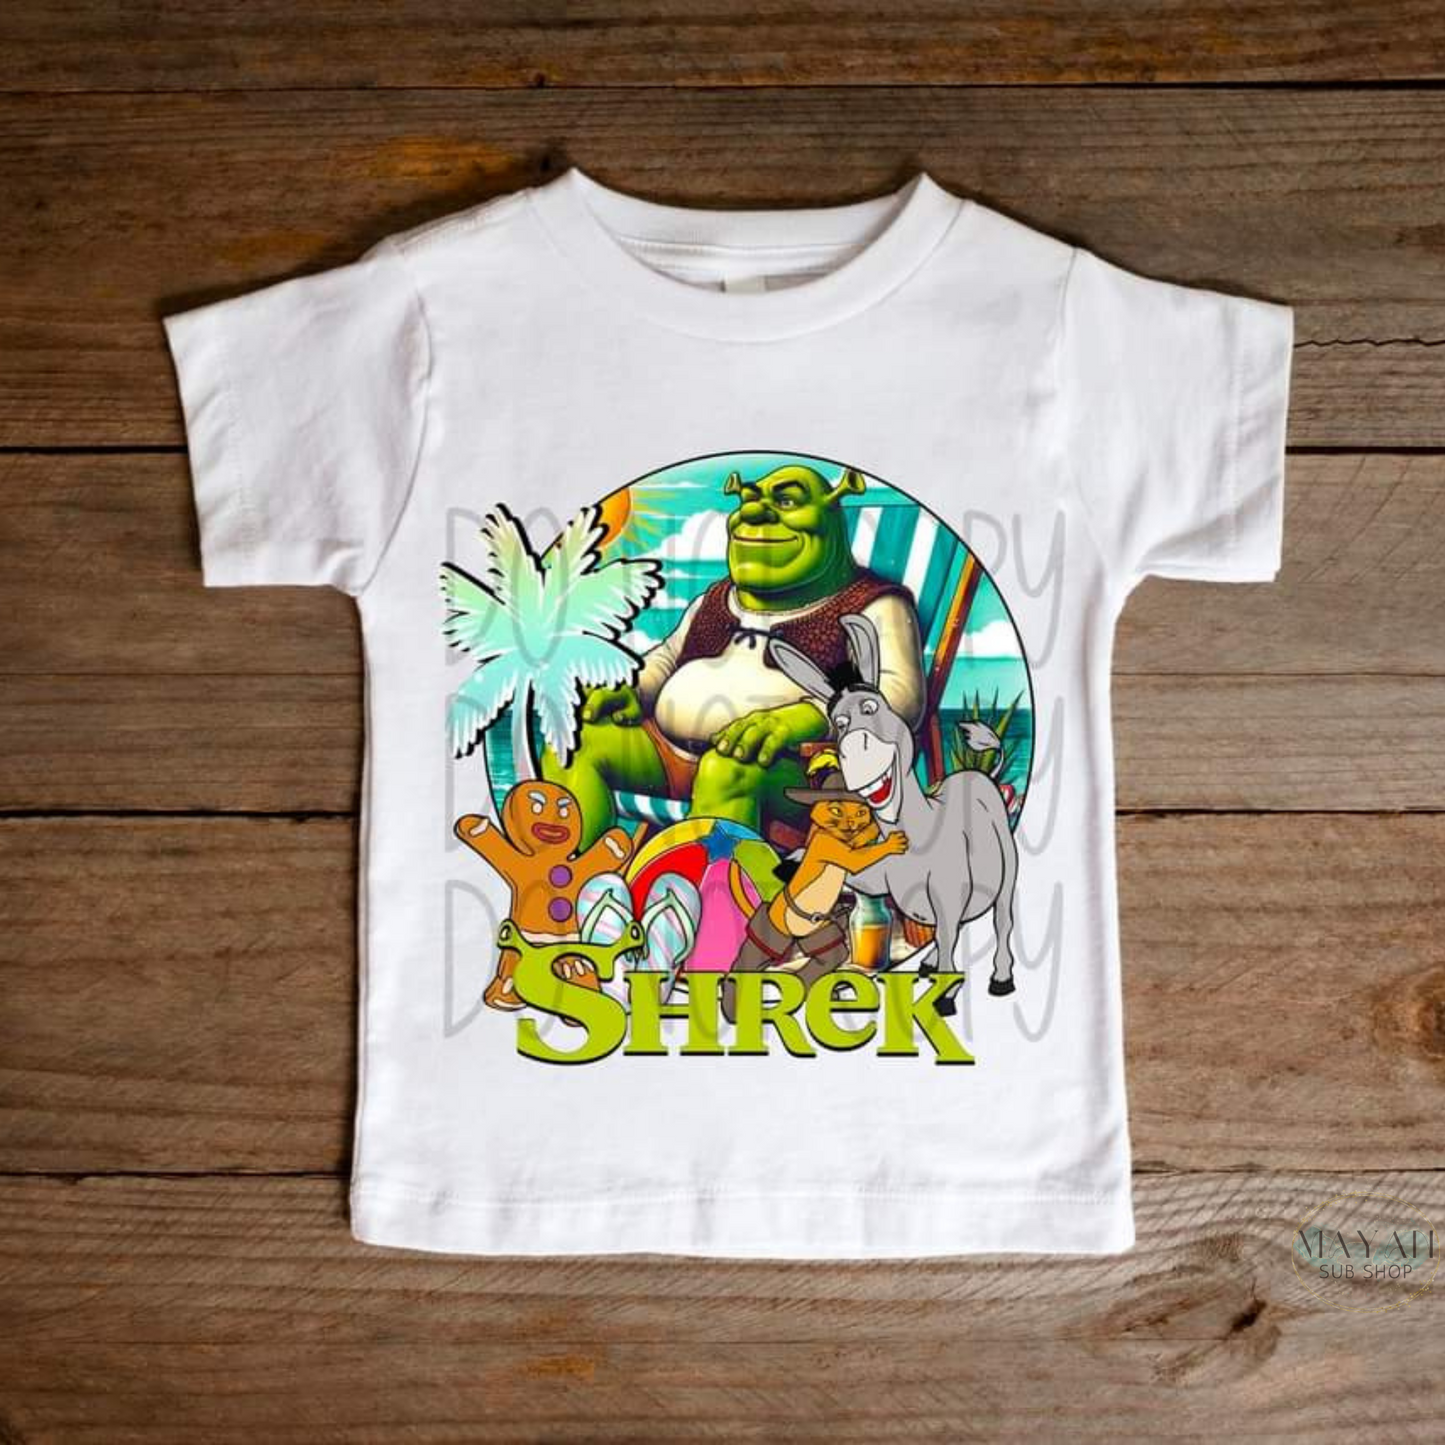 Movie character summer kids shirt. -Mayan Sub Shop